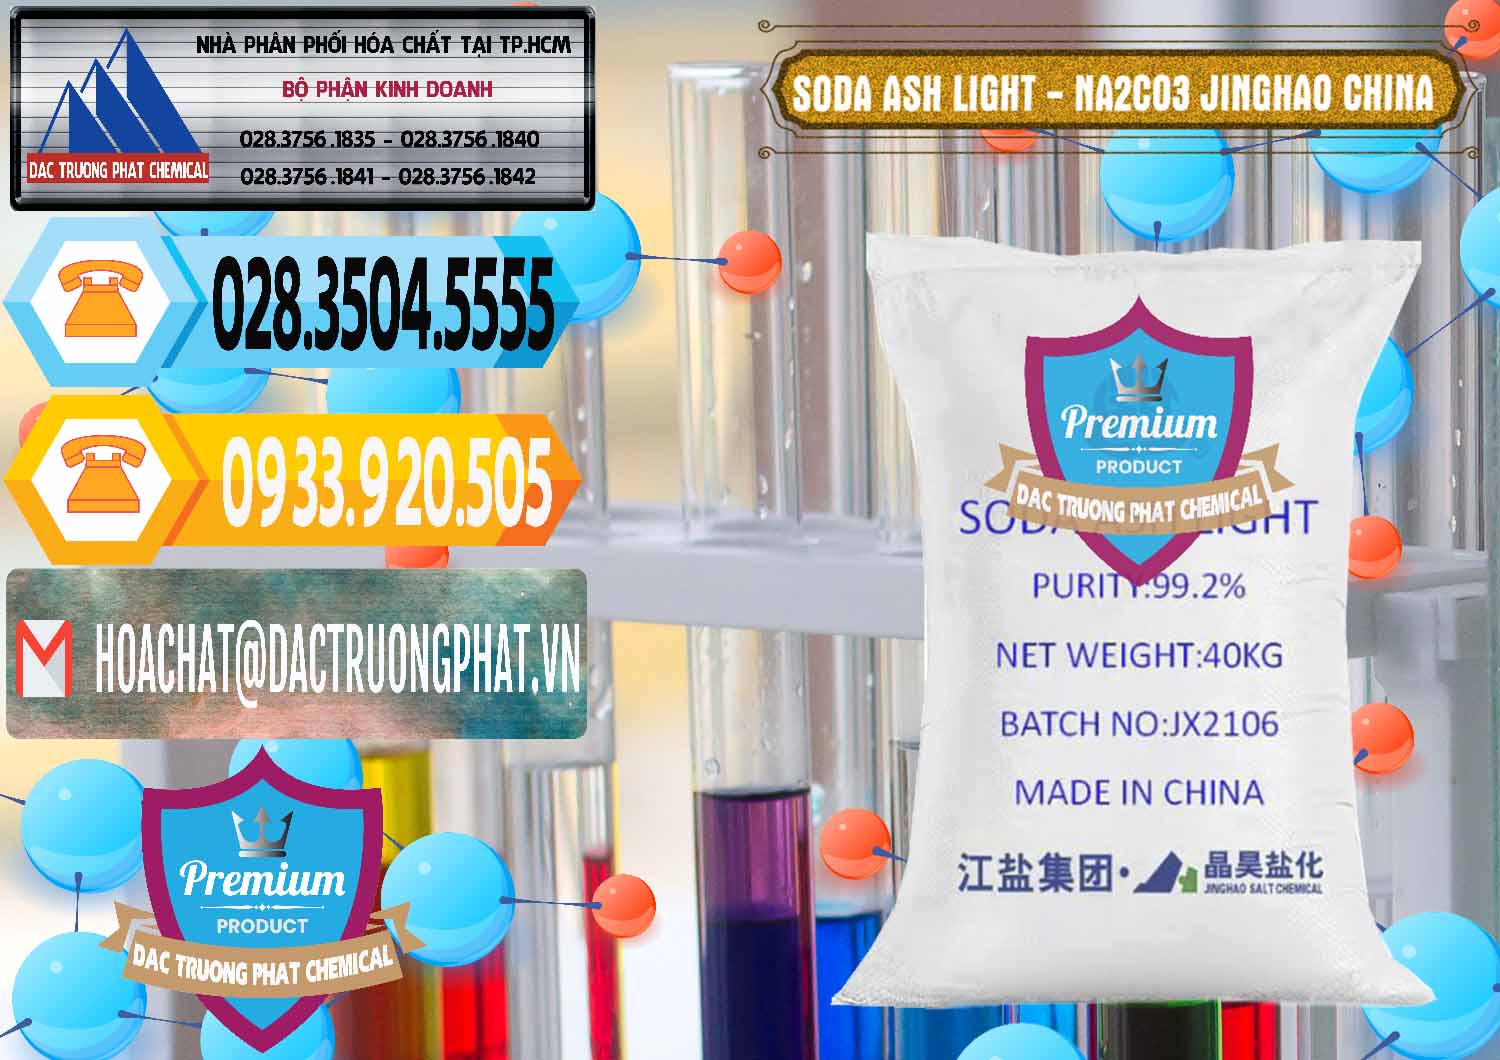 Công ty cung ứng & bán Soda Ash Light - NA2CO3 Jinghao Trung Quốc China - 0339 - Chuyên phân phối ( kinh doanh ) hóa chất tại TP.HCM - hoachattayrua.net